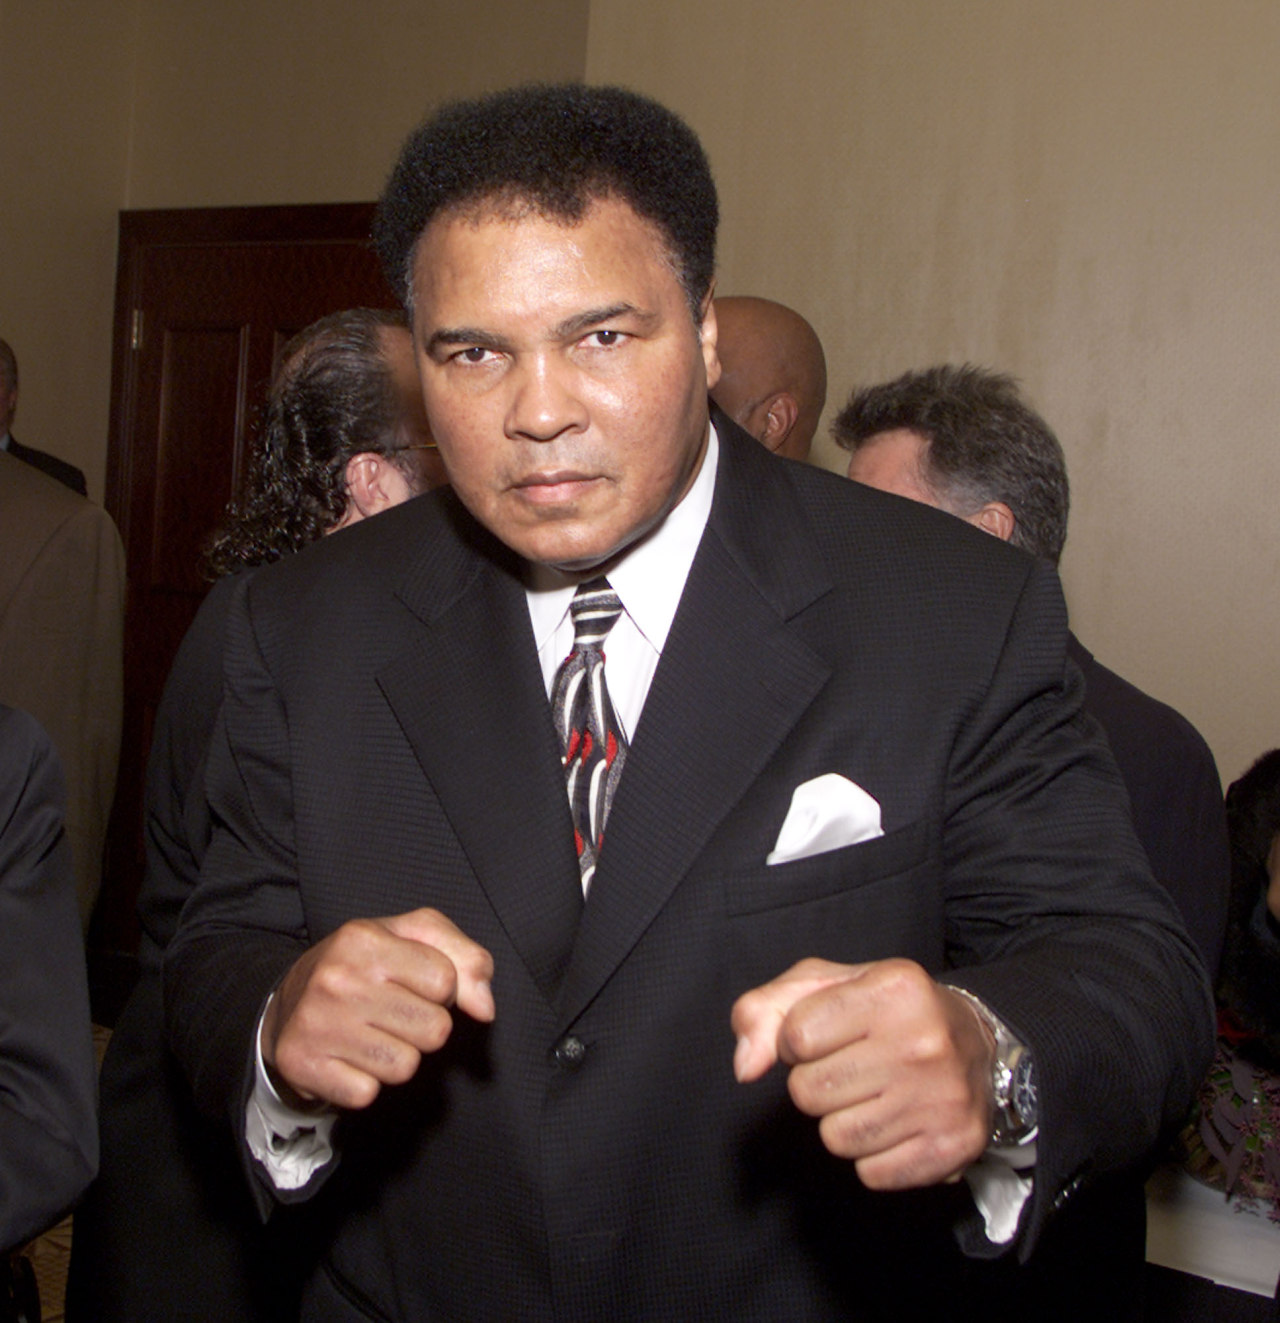 <p><strong>Мохамед Али</strong> - Покойният професионален боксьор и активист също е дошъл на бял свят на 17 януари. Али е роден като Касиус Марсел Клей в Луисвил, Кентъки през 1942 г. Той е високо ценен като спортист, който даде пример за гордост и съпротива на афро-американците по време на движението за граждански права. Към днешна дата Али е единственият боксьор, който е трикратен шампион в тежка категория. Той беше обявен за боец на годината цели шест пъти от списание Ring и често е смятан за най-великия спортист на 20-ти век.</p>